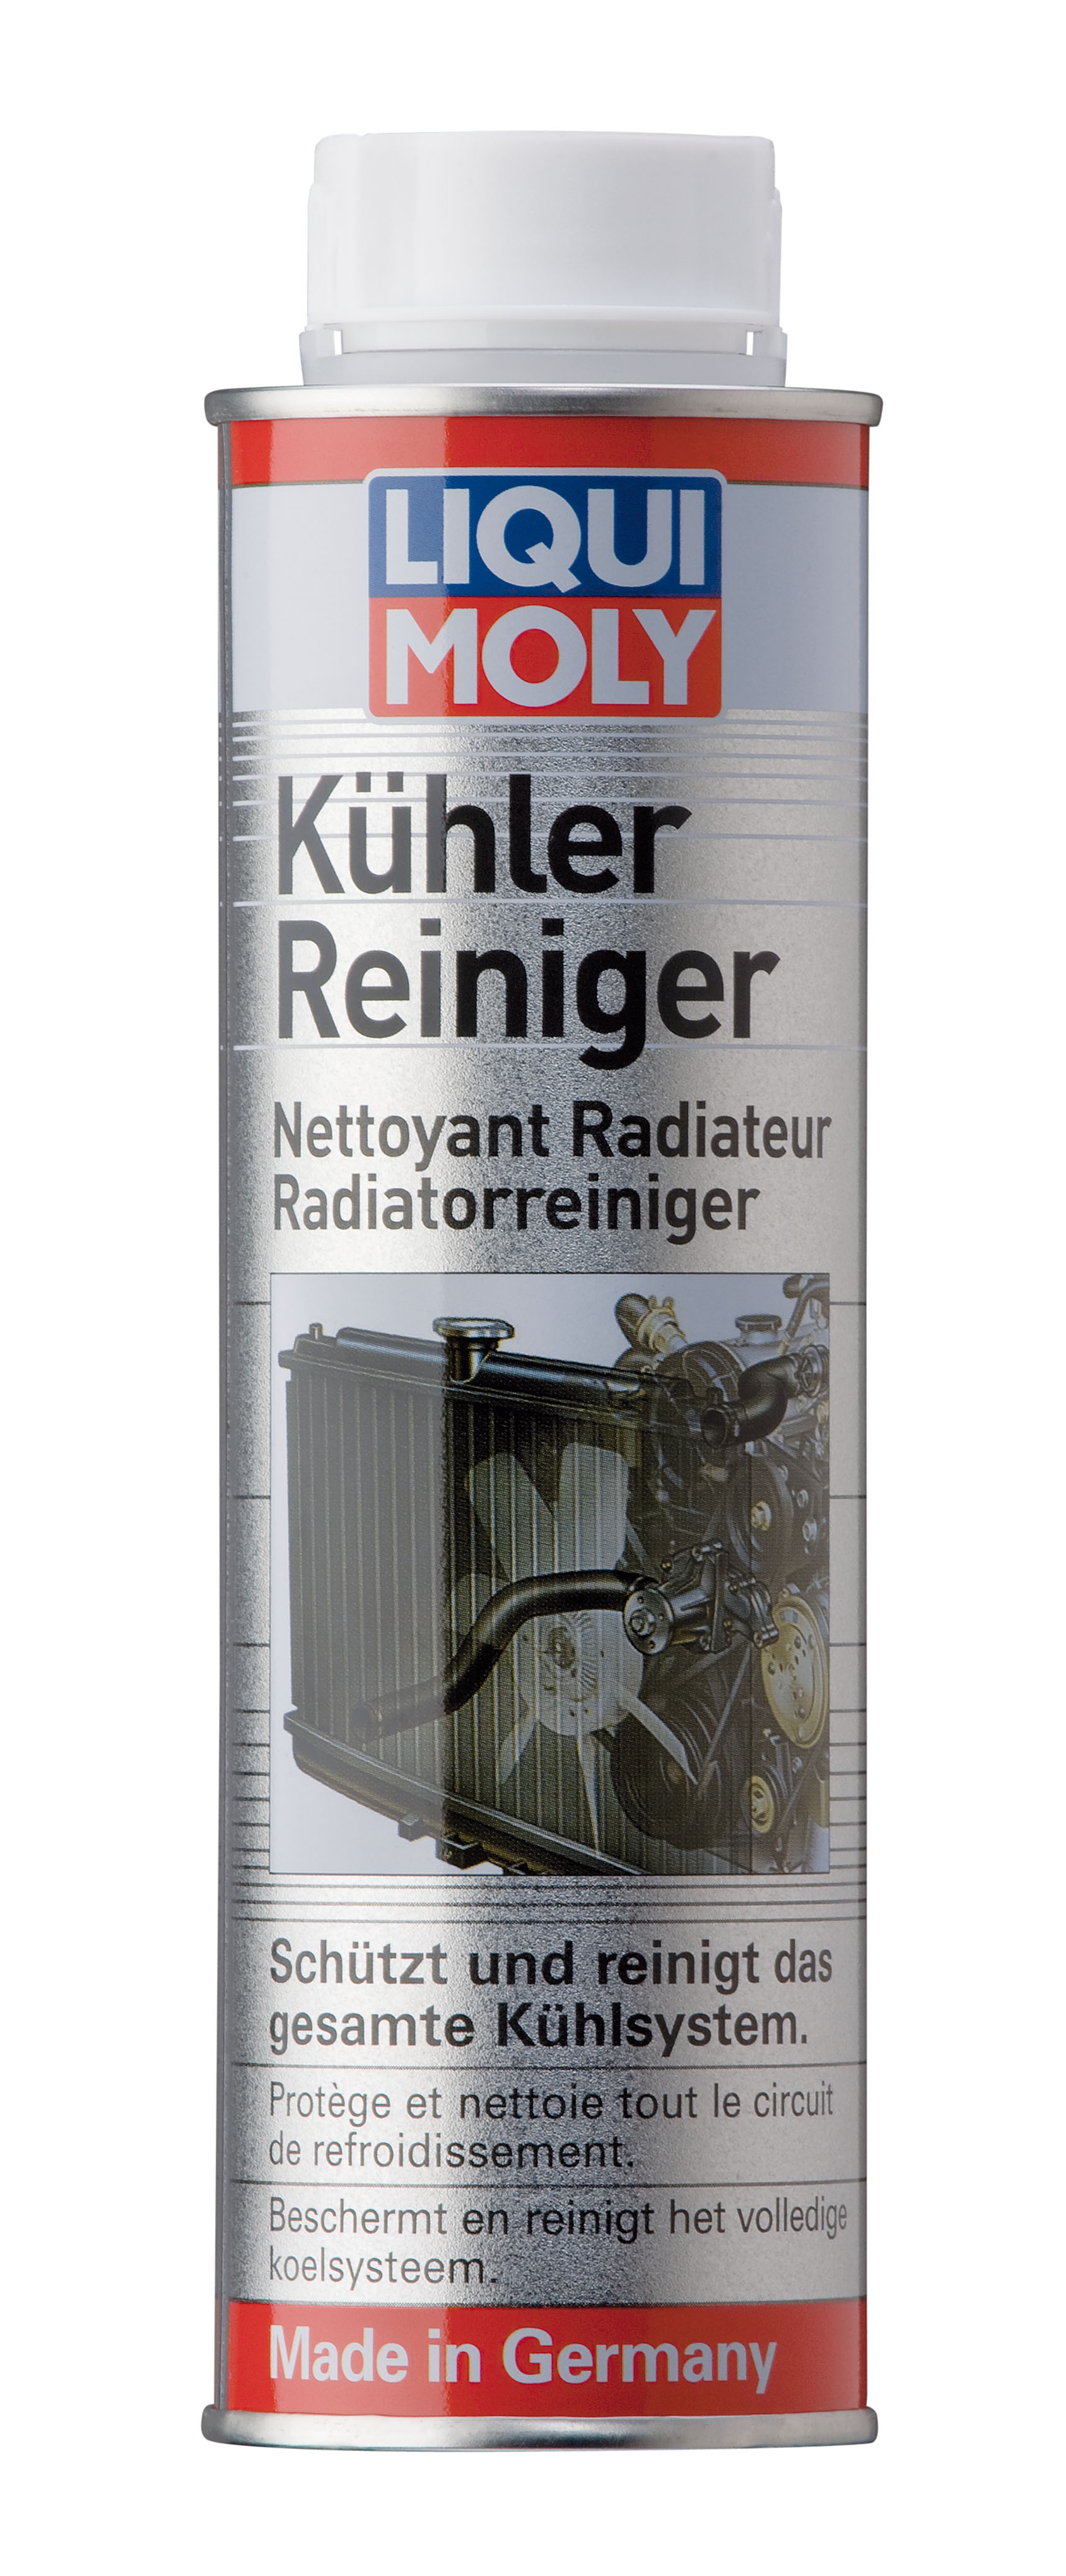 Radiator Cleaner 300ml